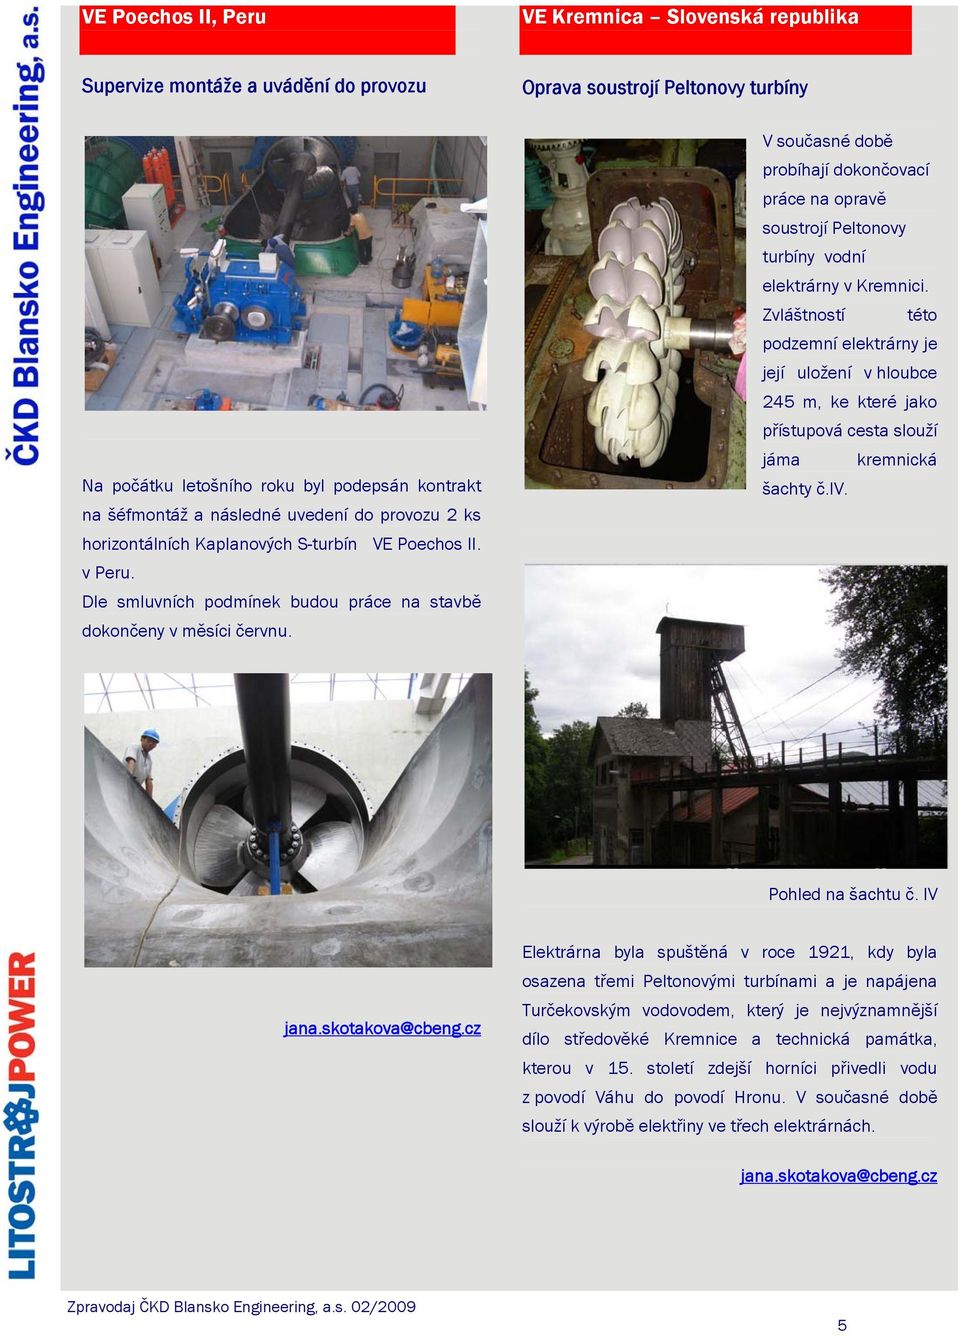 V současné době probíhají dokončovací práce na opravě soustrojí Peltonovy turbíny vodní elektrárny v Kremnici.